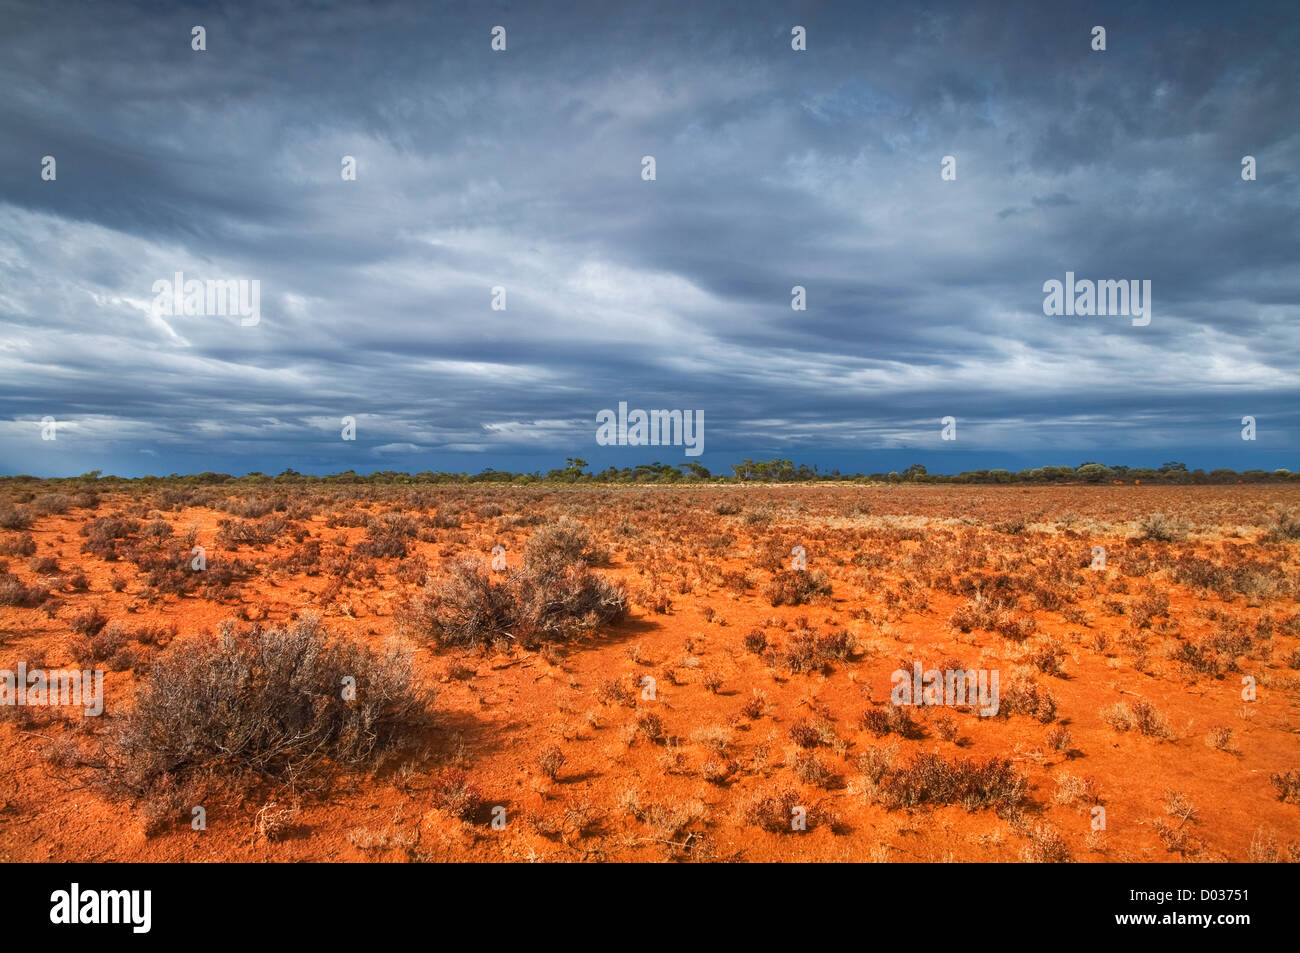 A thunderstorm approaching Little Sandy Desert. Stock Photo